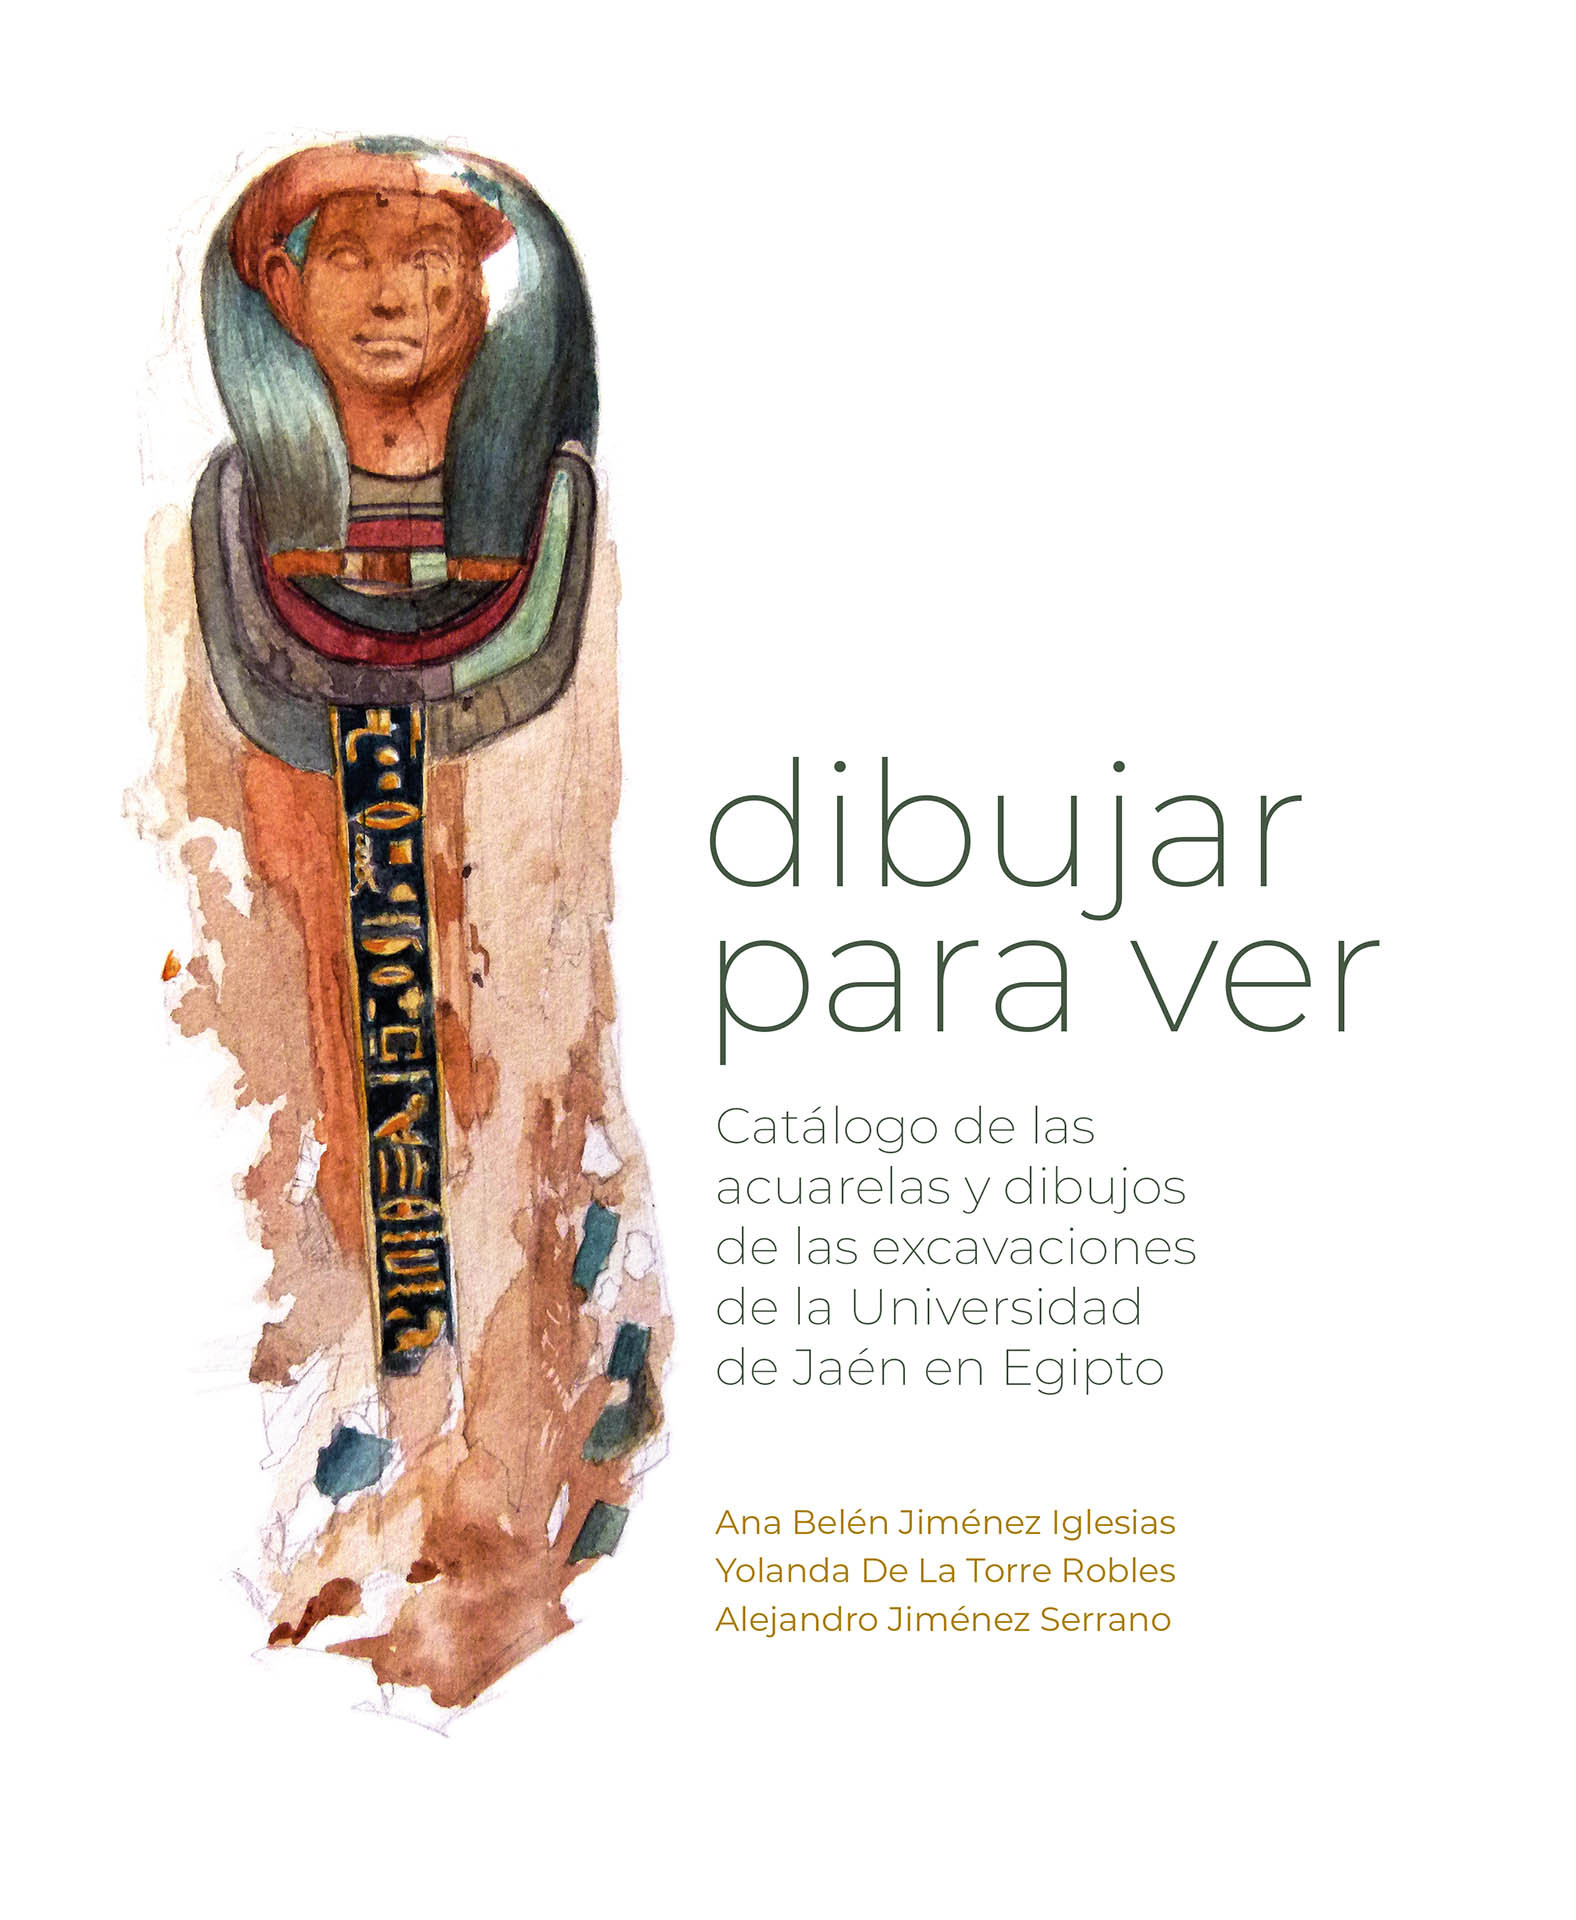 Dibujar para ver. Catálogo de las acuarelas y dibujos de las excavaciones de la Universidad de Jaén en Egipto